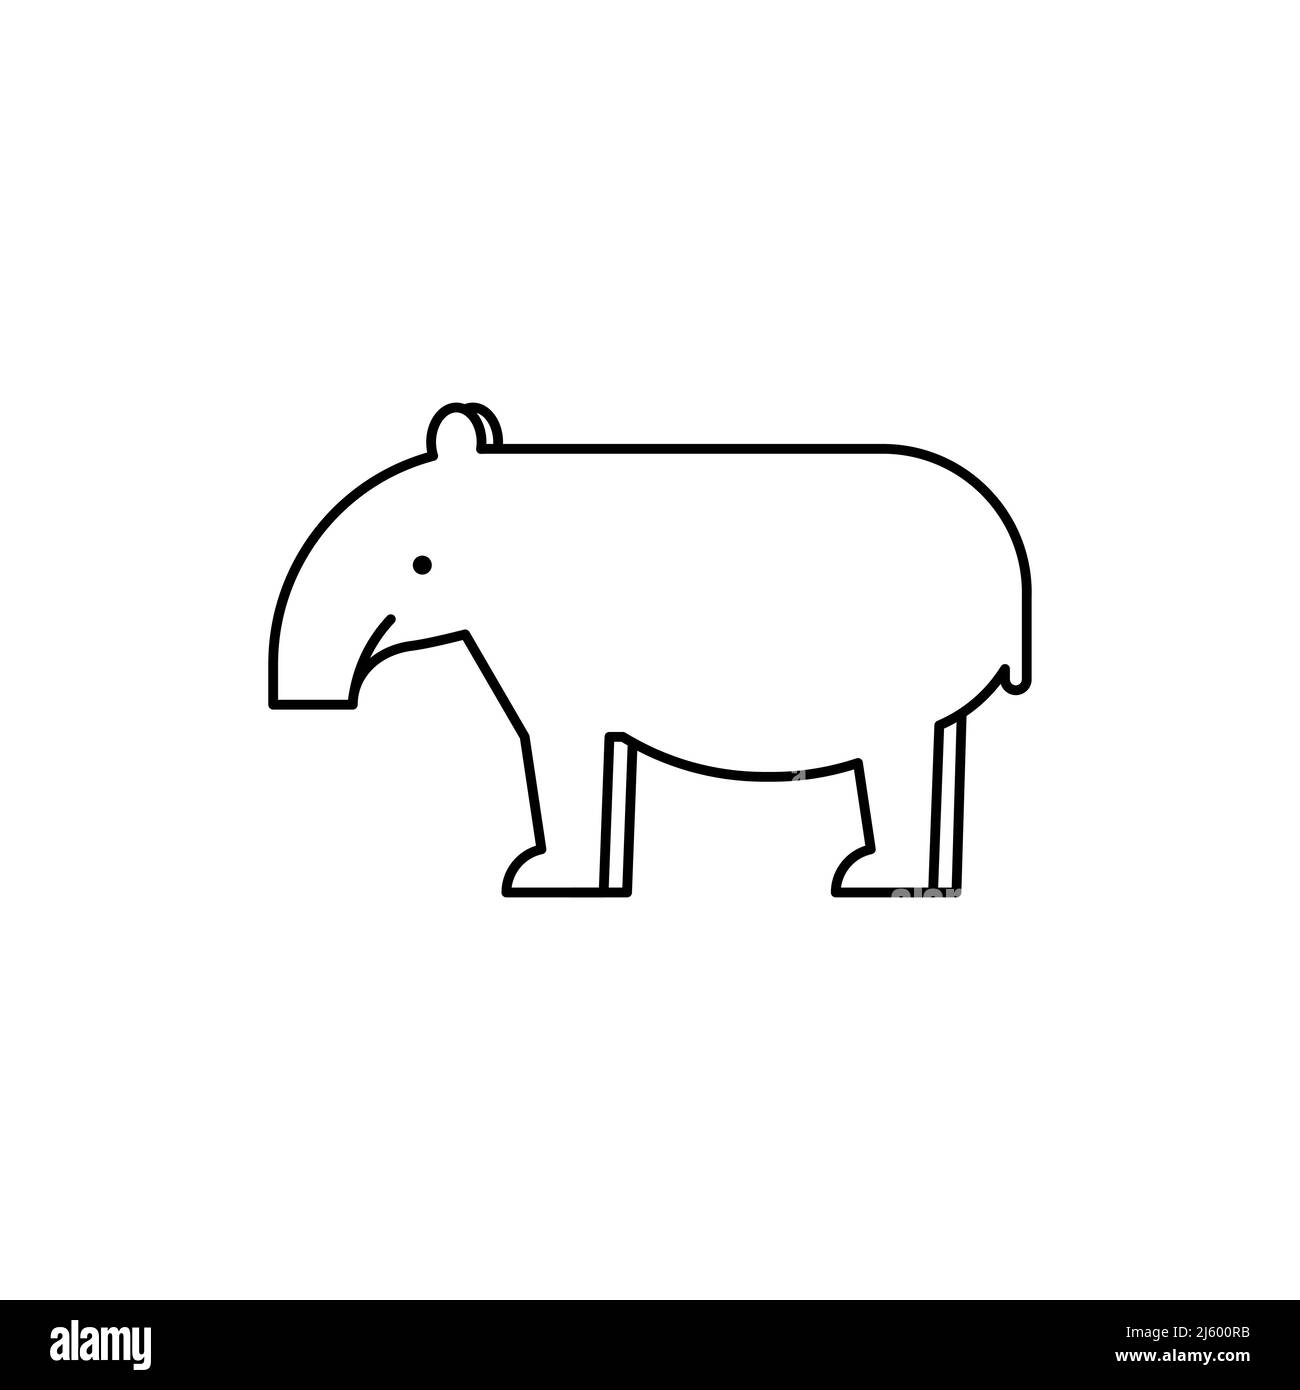 Tapir-Symbol. Schwarzer Umriss. Bewusstsein für den Umweltschutz. Vektorgrafik, flaches Design Stock Vektor